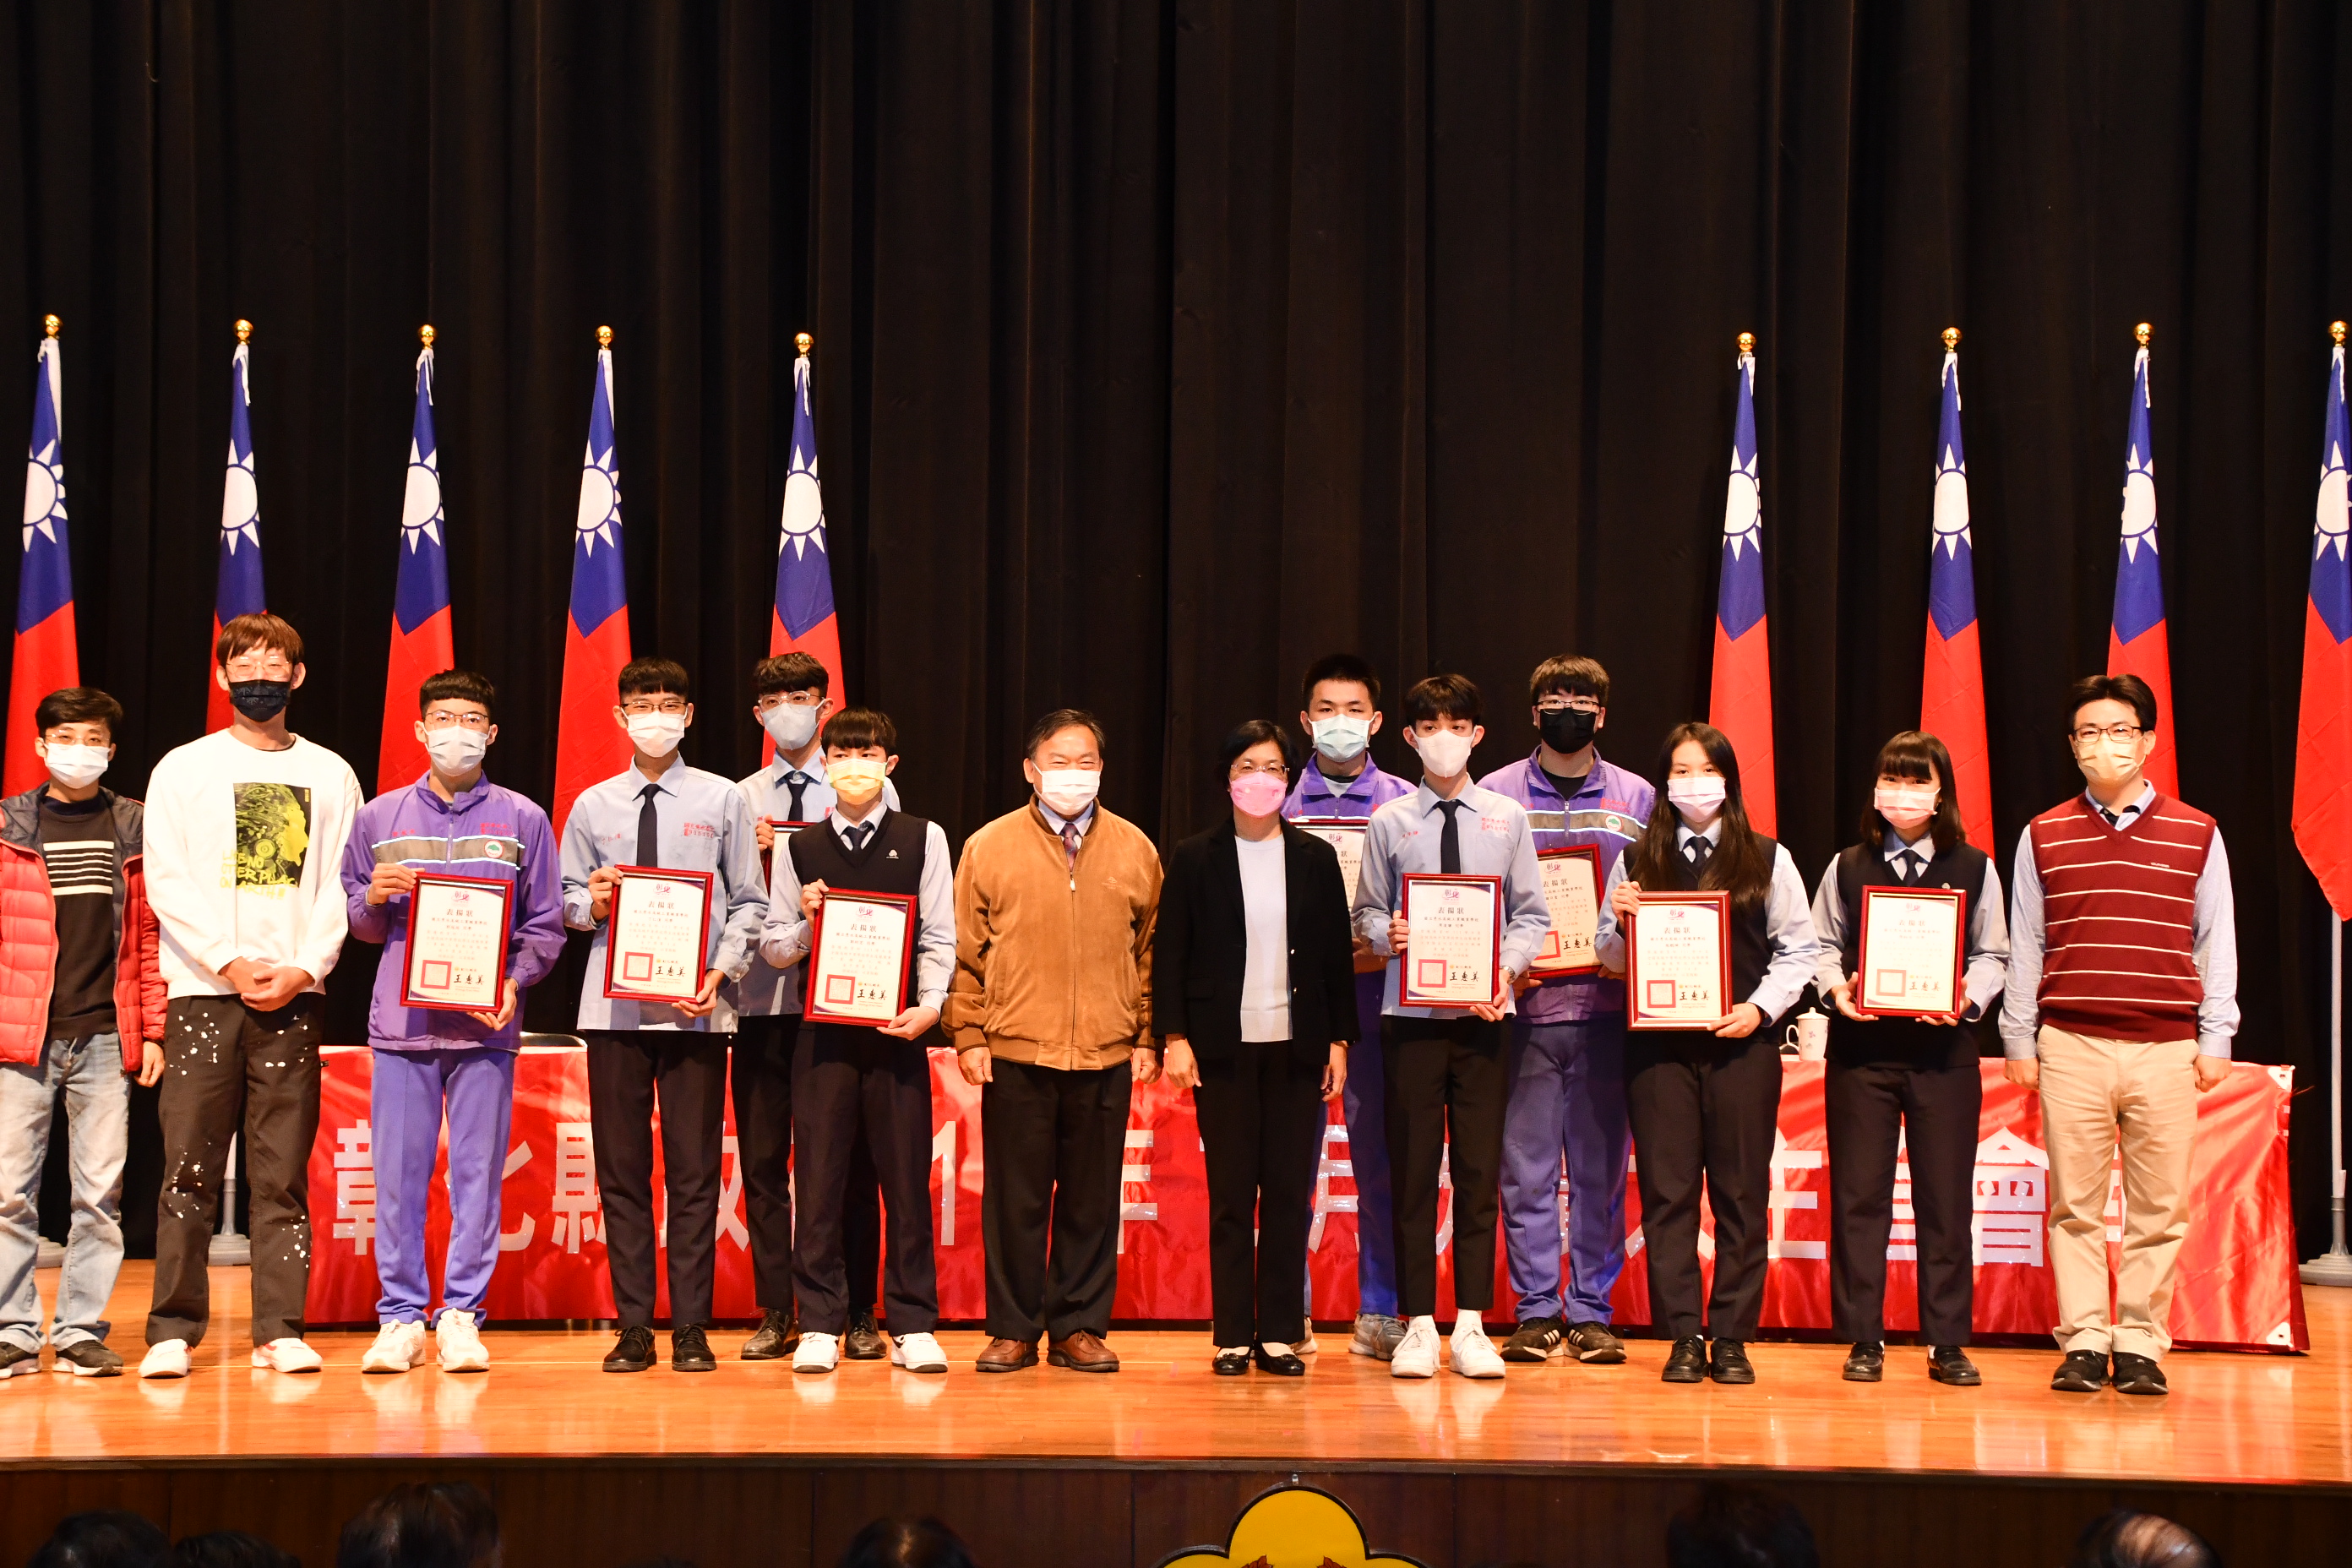 彰县长表扬技艺竞赛  勇夺39座金手奖的学生